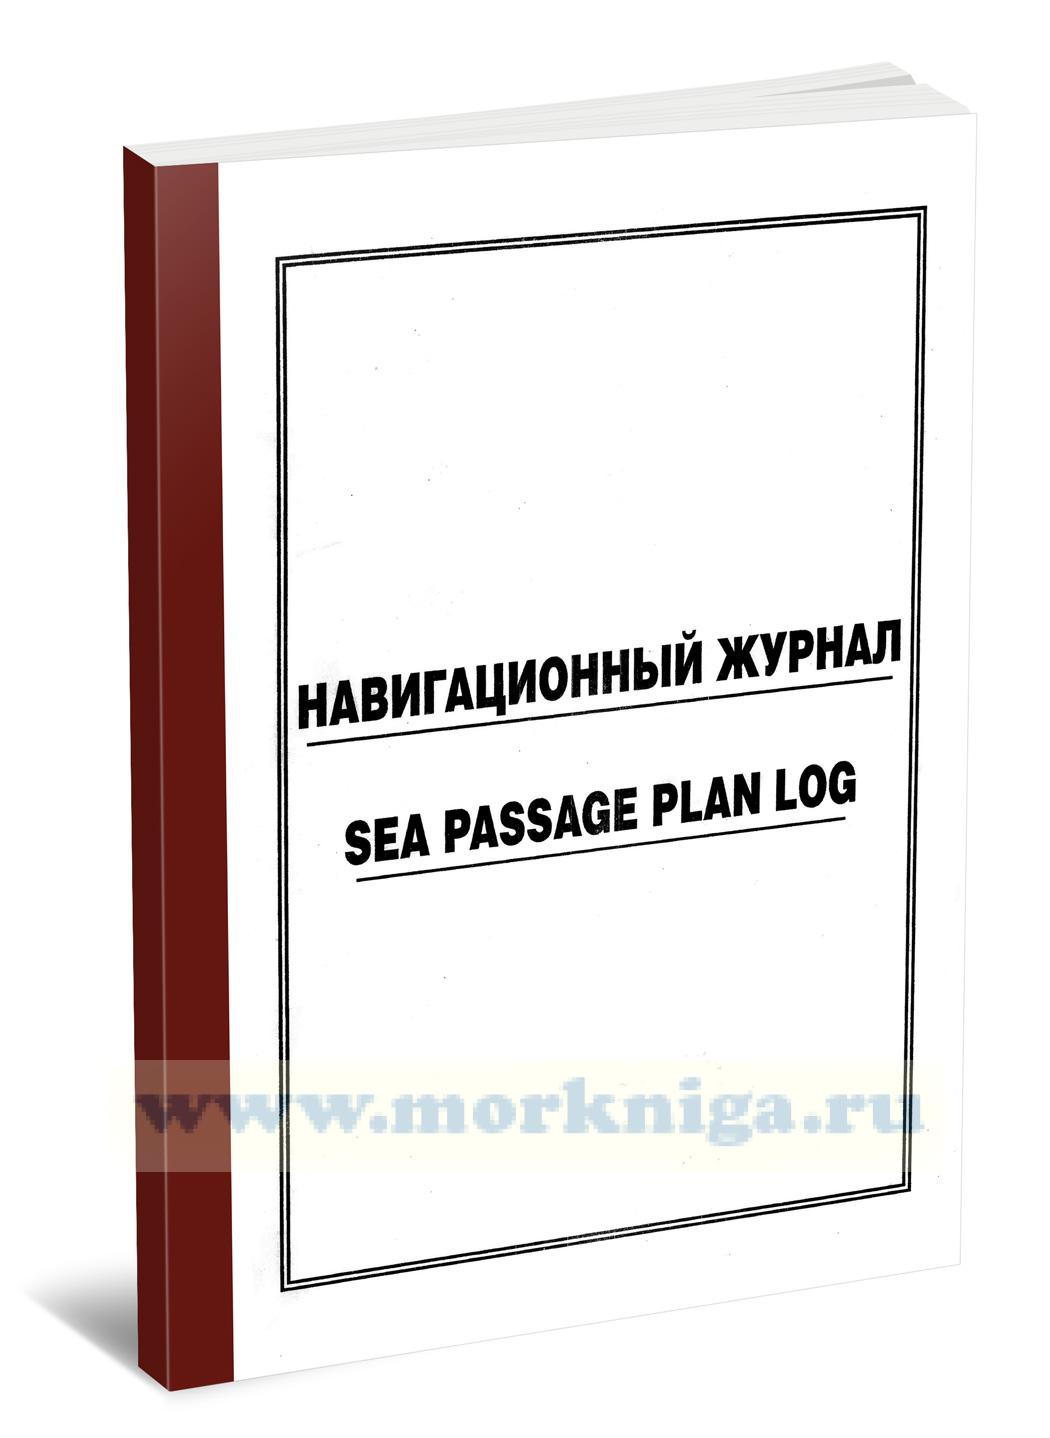 Навигационный журнал. Sea passage plan log